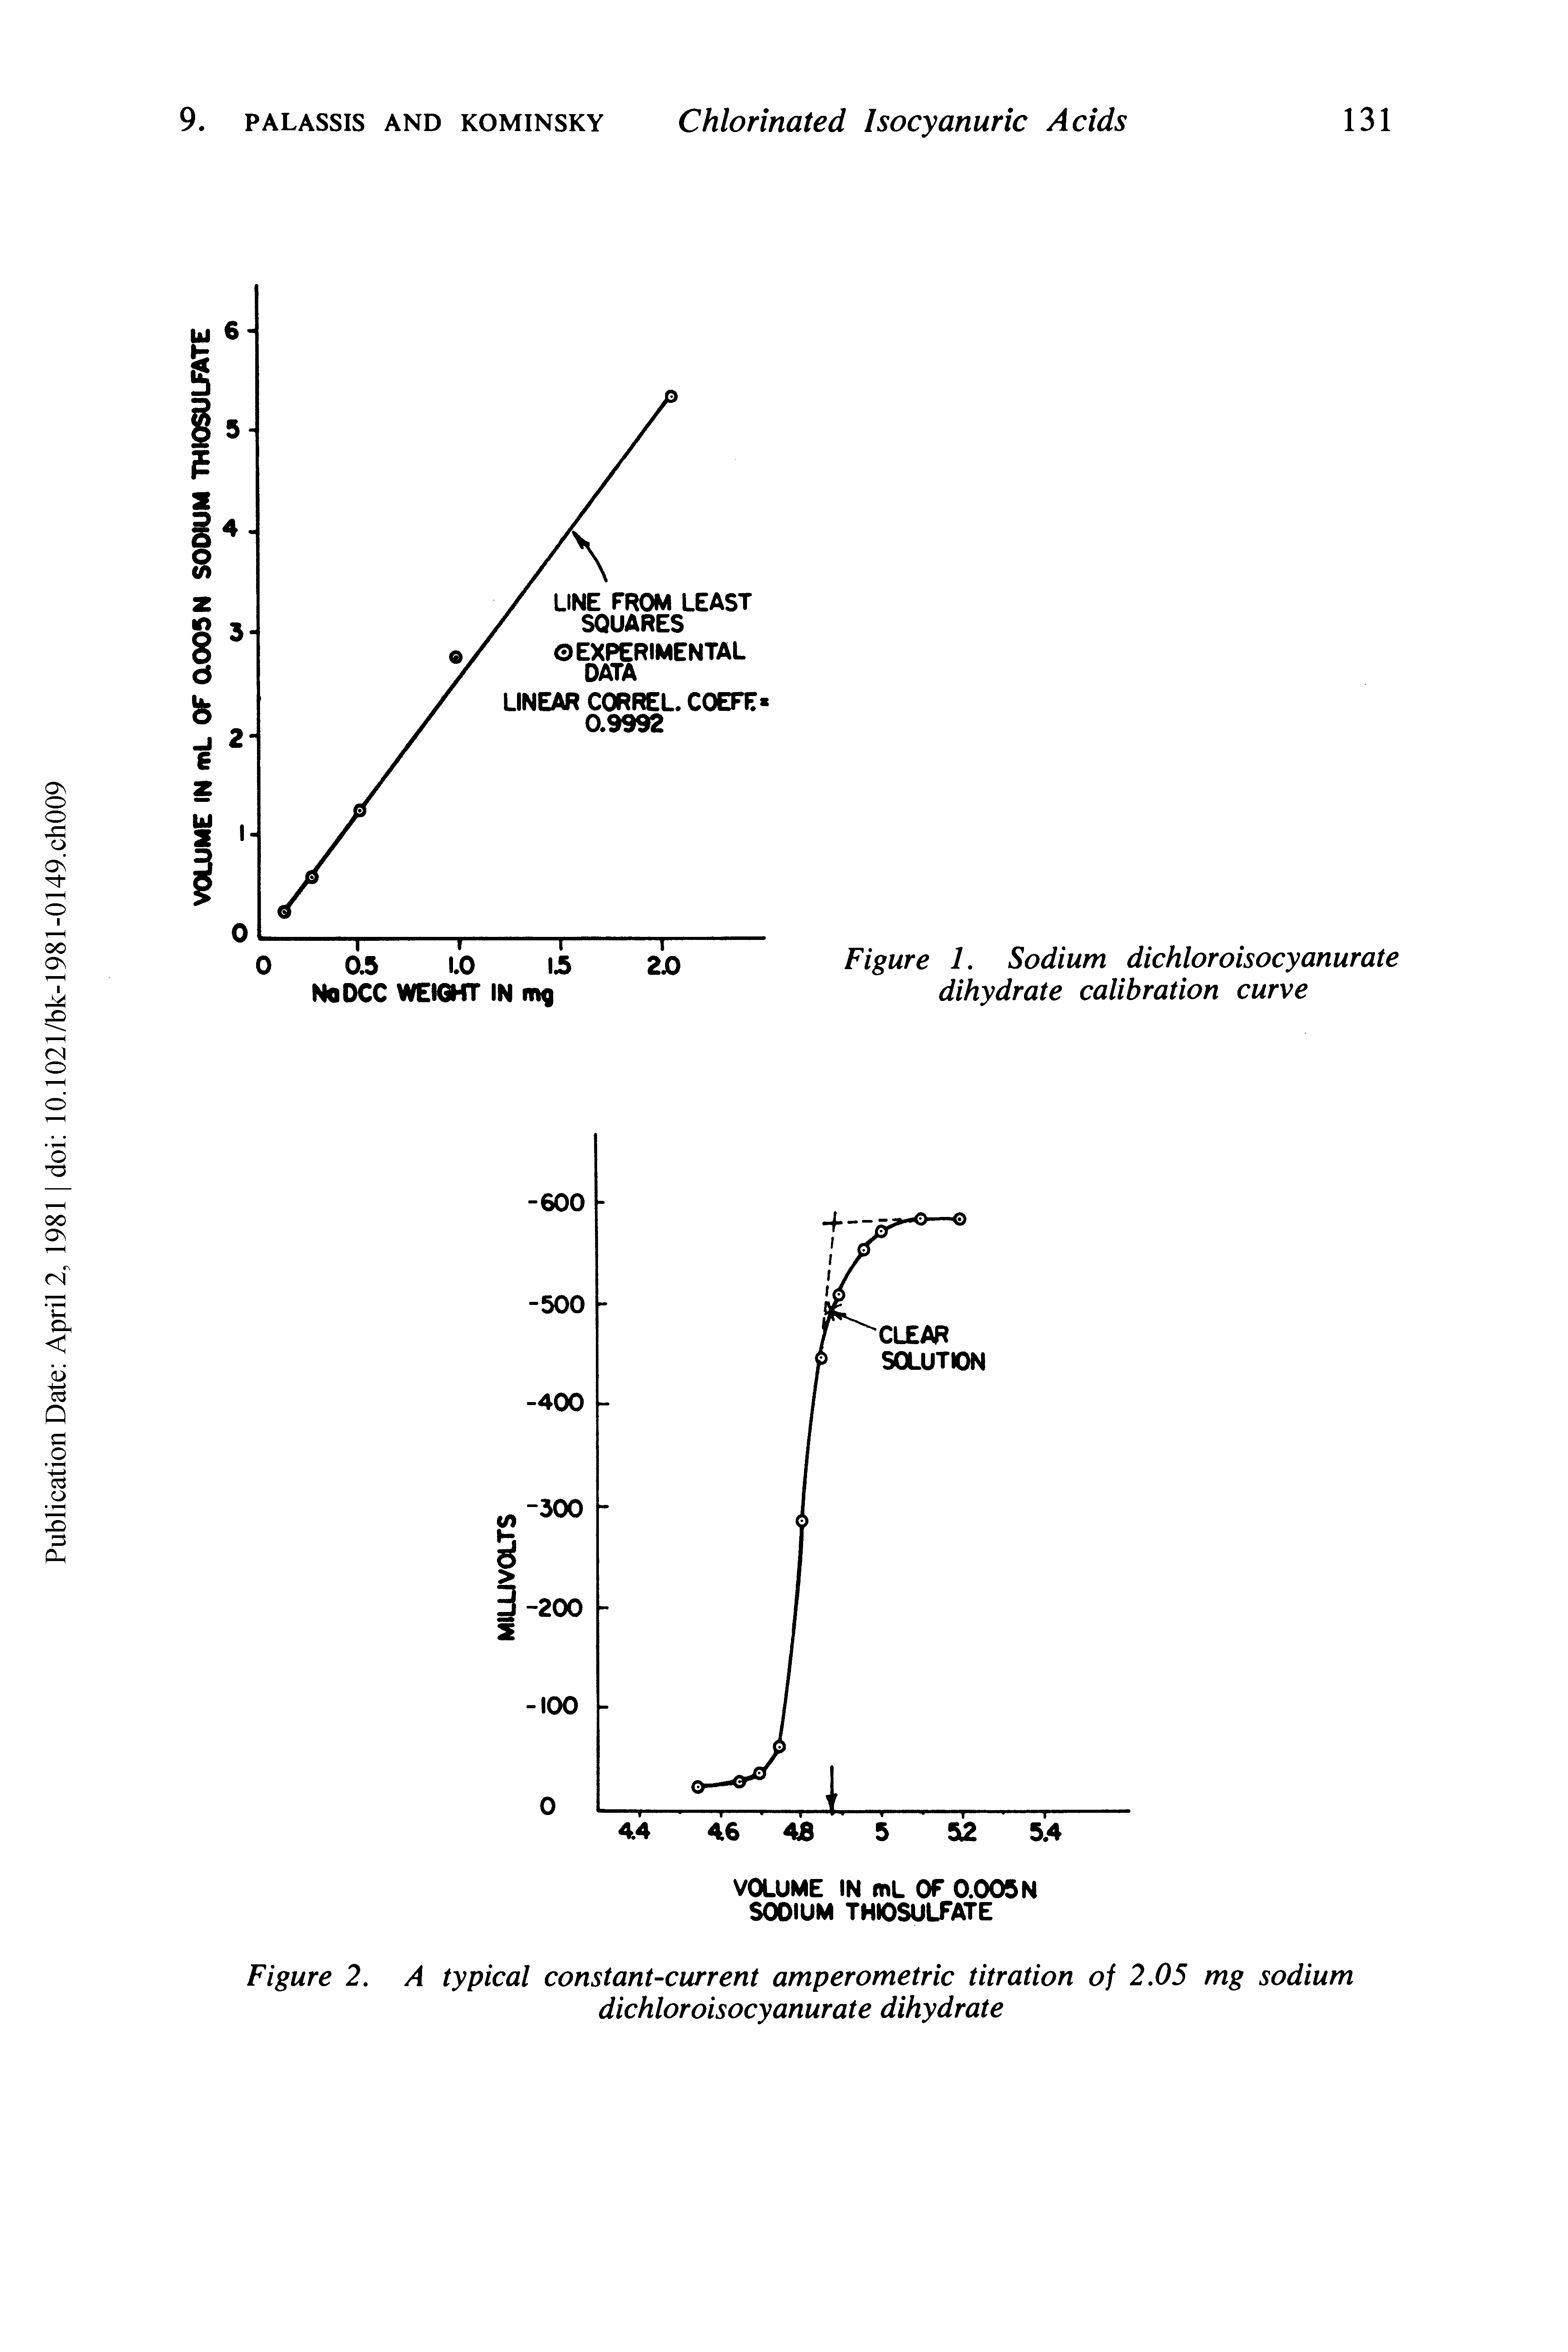 Figure 1. Sodium dichloroisocyanurate dihydrate calibration curve...